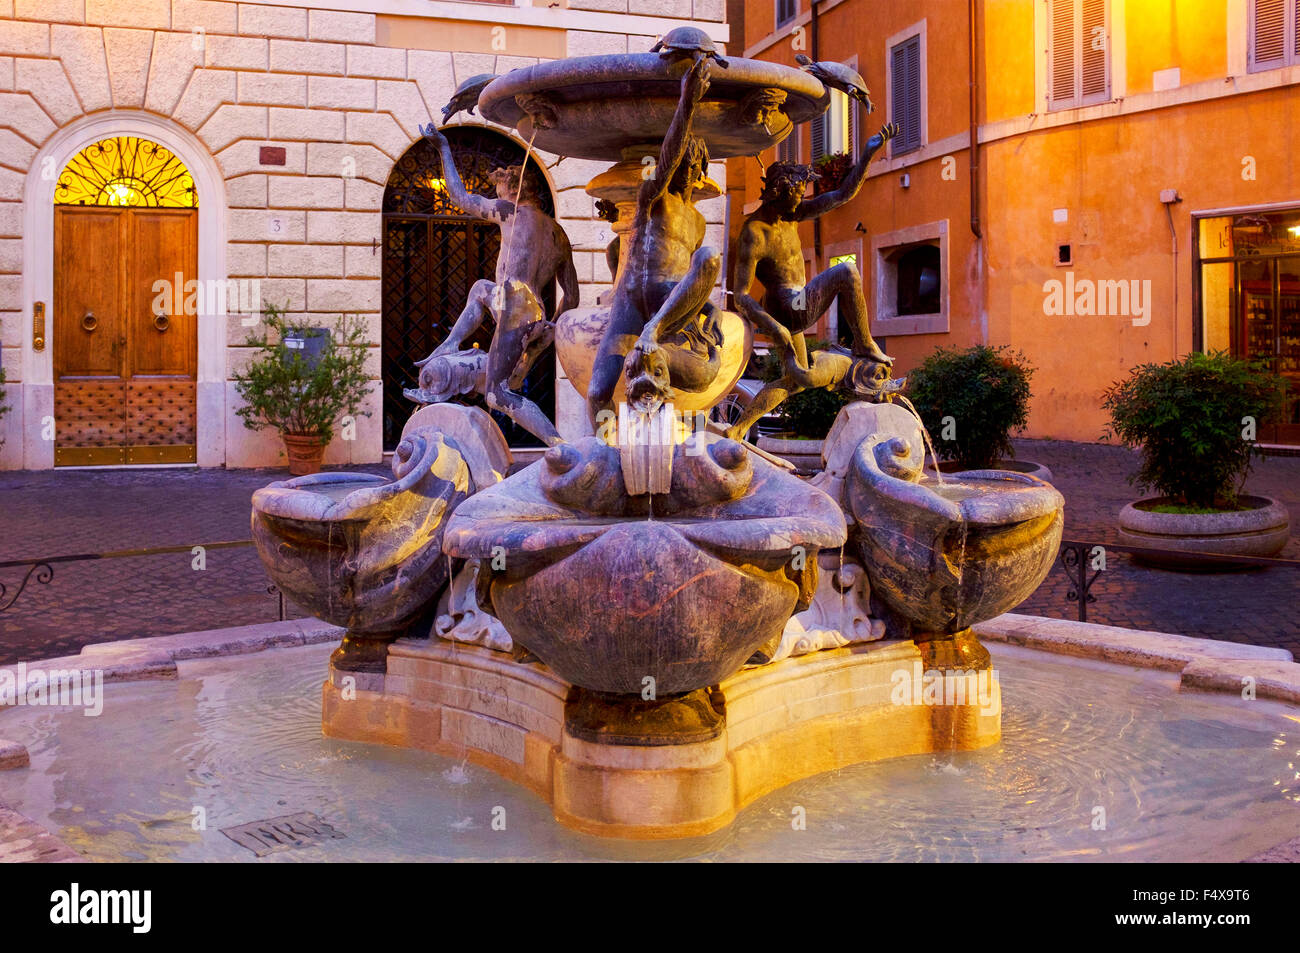 Fontana delle tartarughe dans piazza Mattei, Rome Italie Banque D'Images